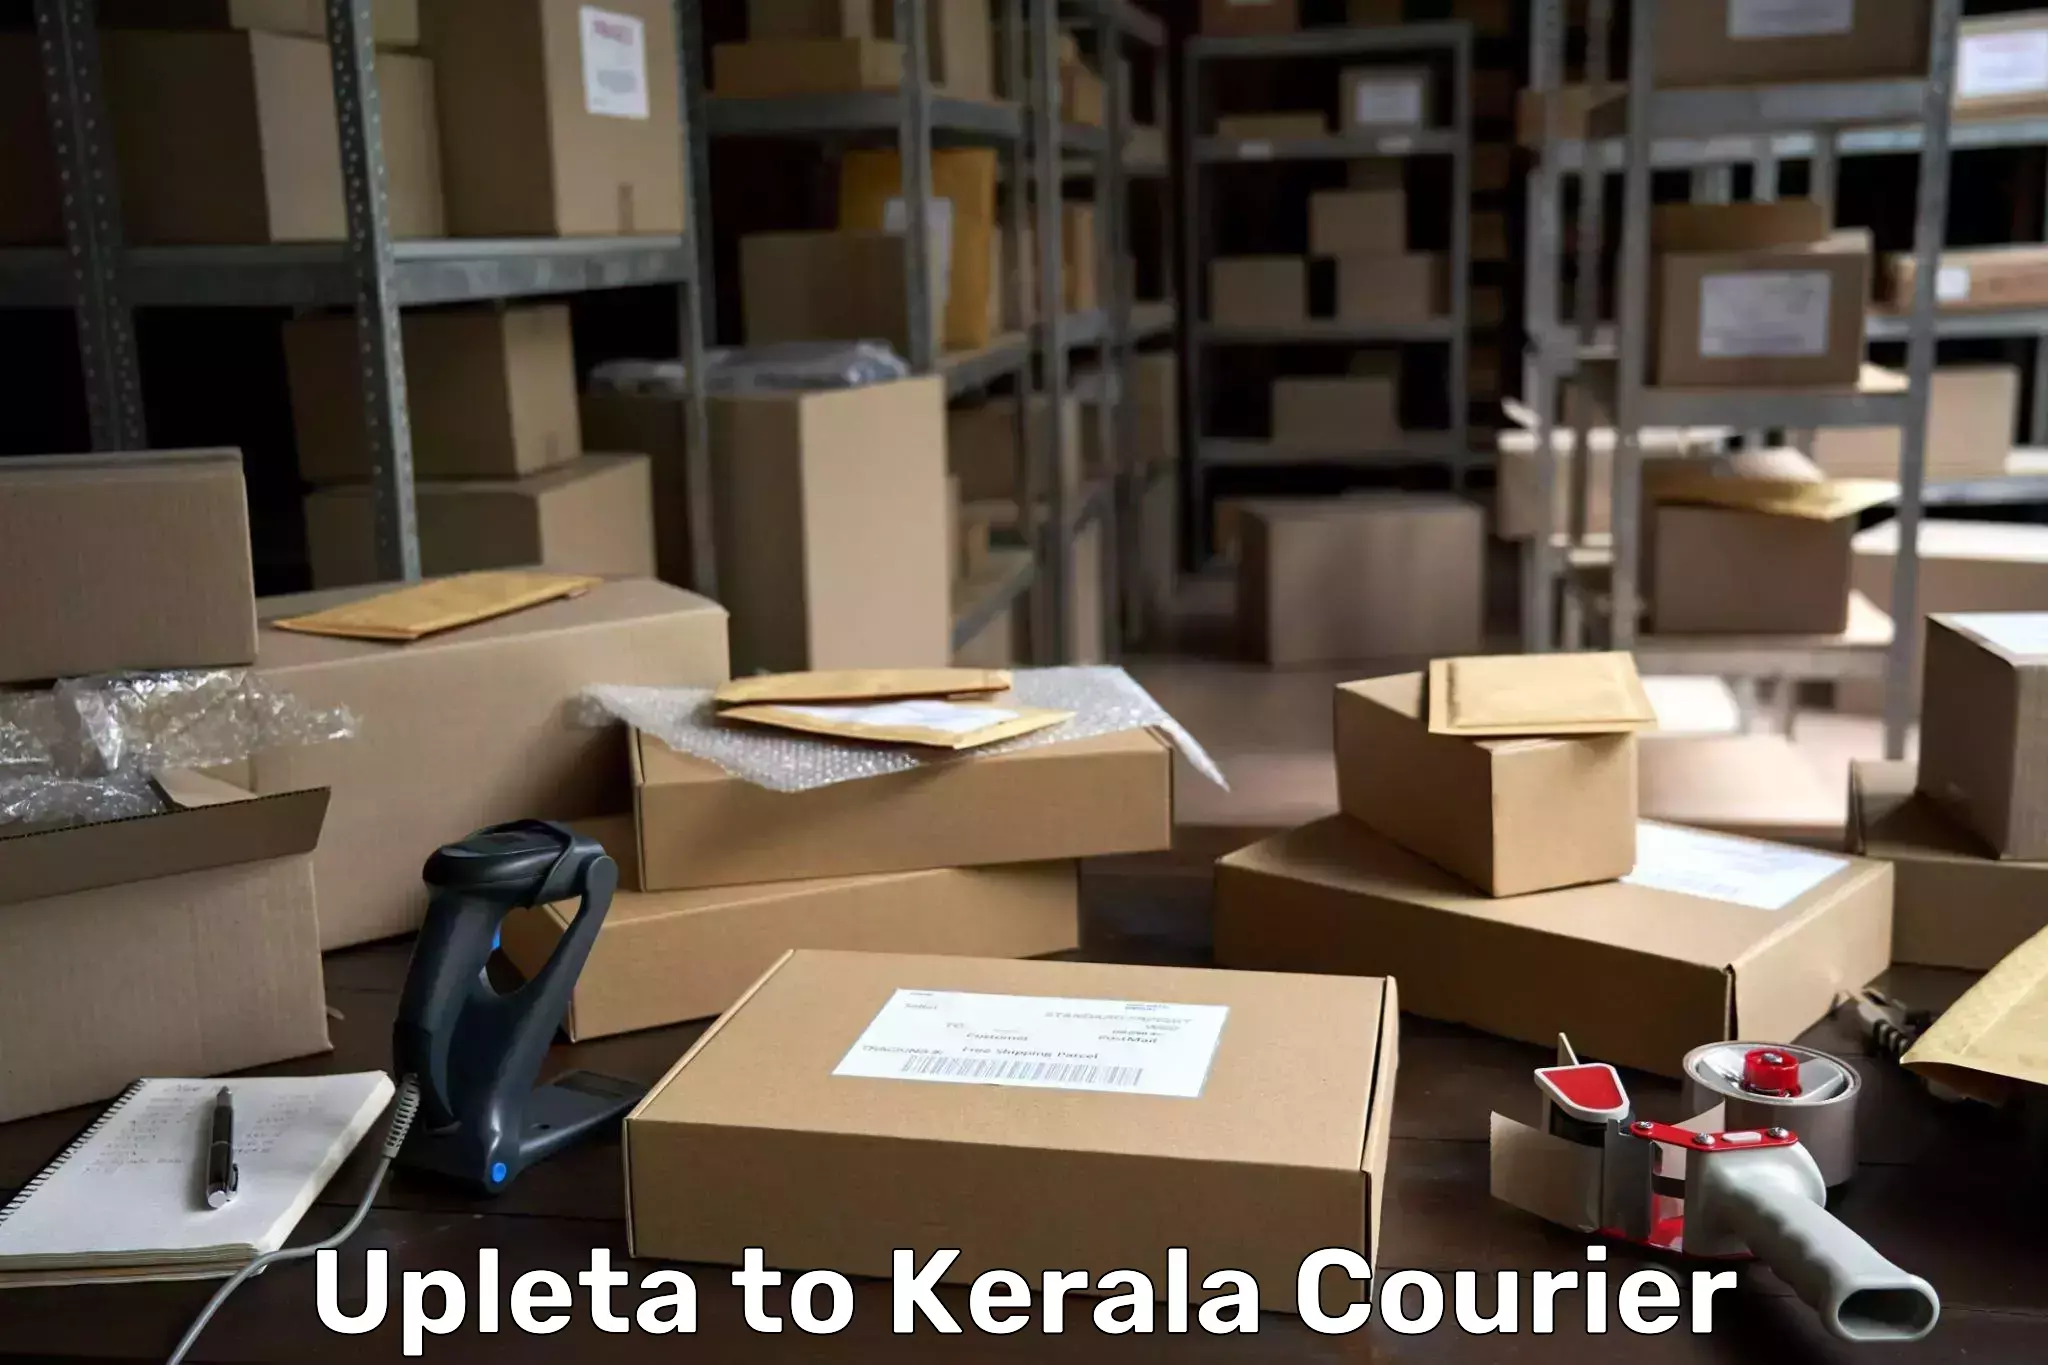 Courier service comparison Upleta to Kerala